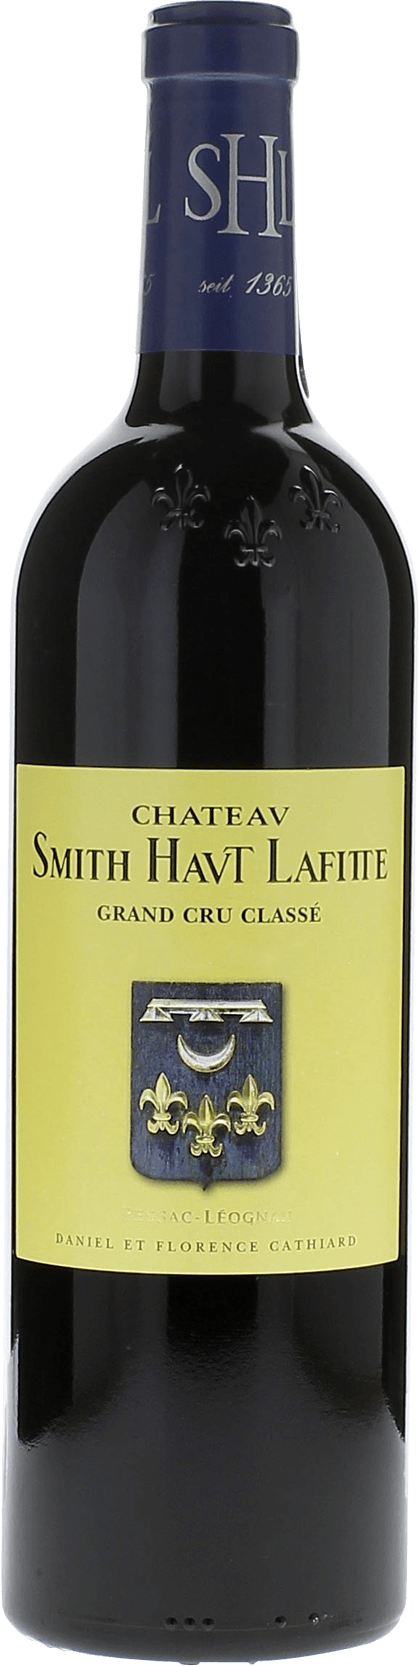 Smith haut lafitte 2017 Grand Cru Class Graves, Bordeaux rouge